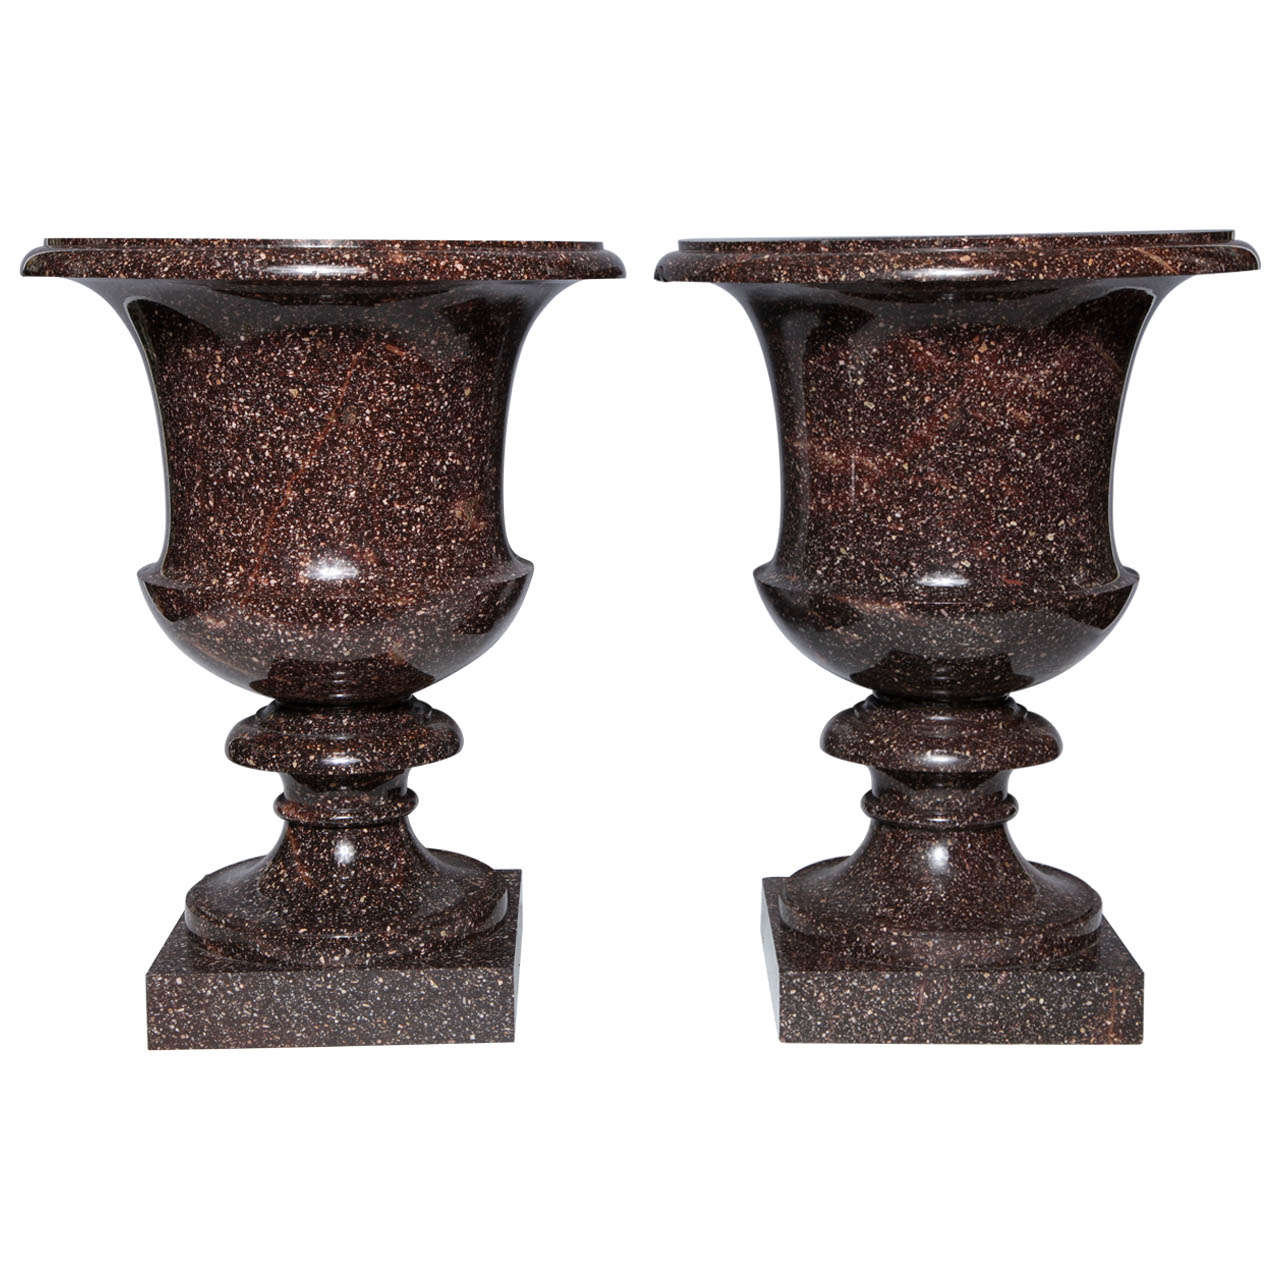 Monumentales Paar schwedischer Porphyr-Vasen in Form einer Campagna aus der neoklassischen Zeit, Monumental